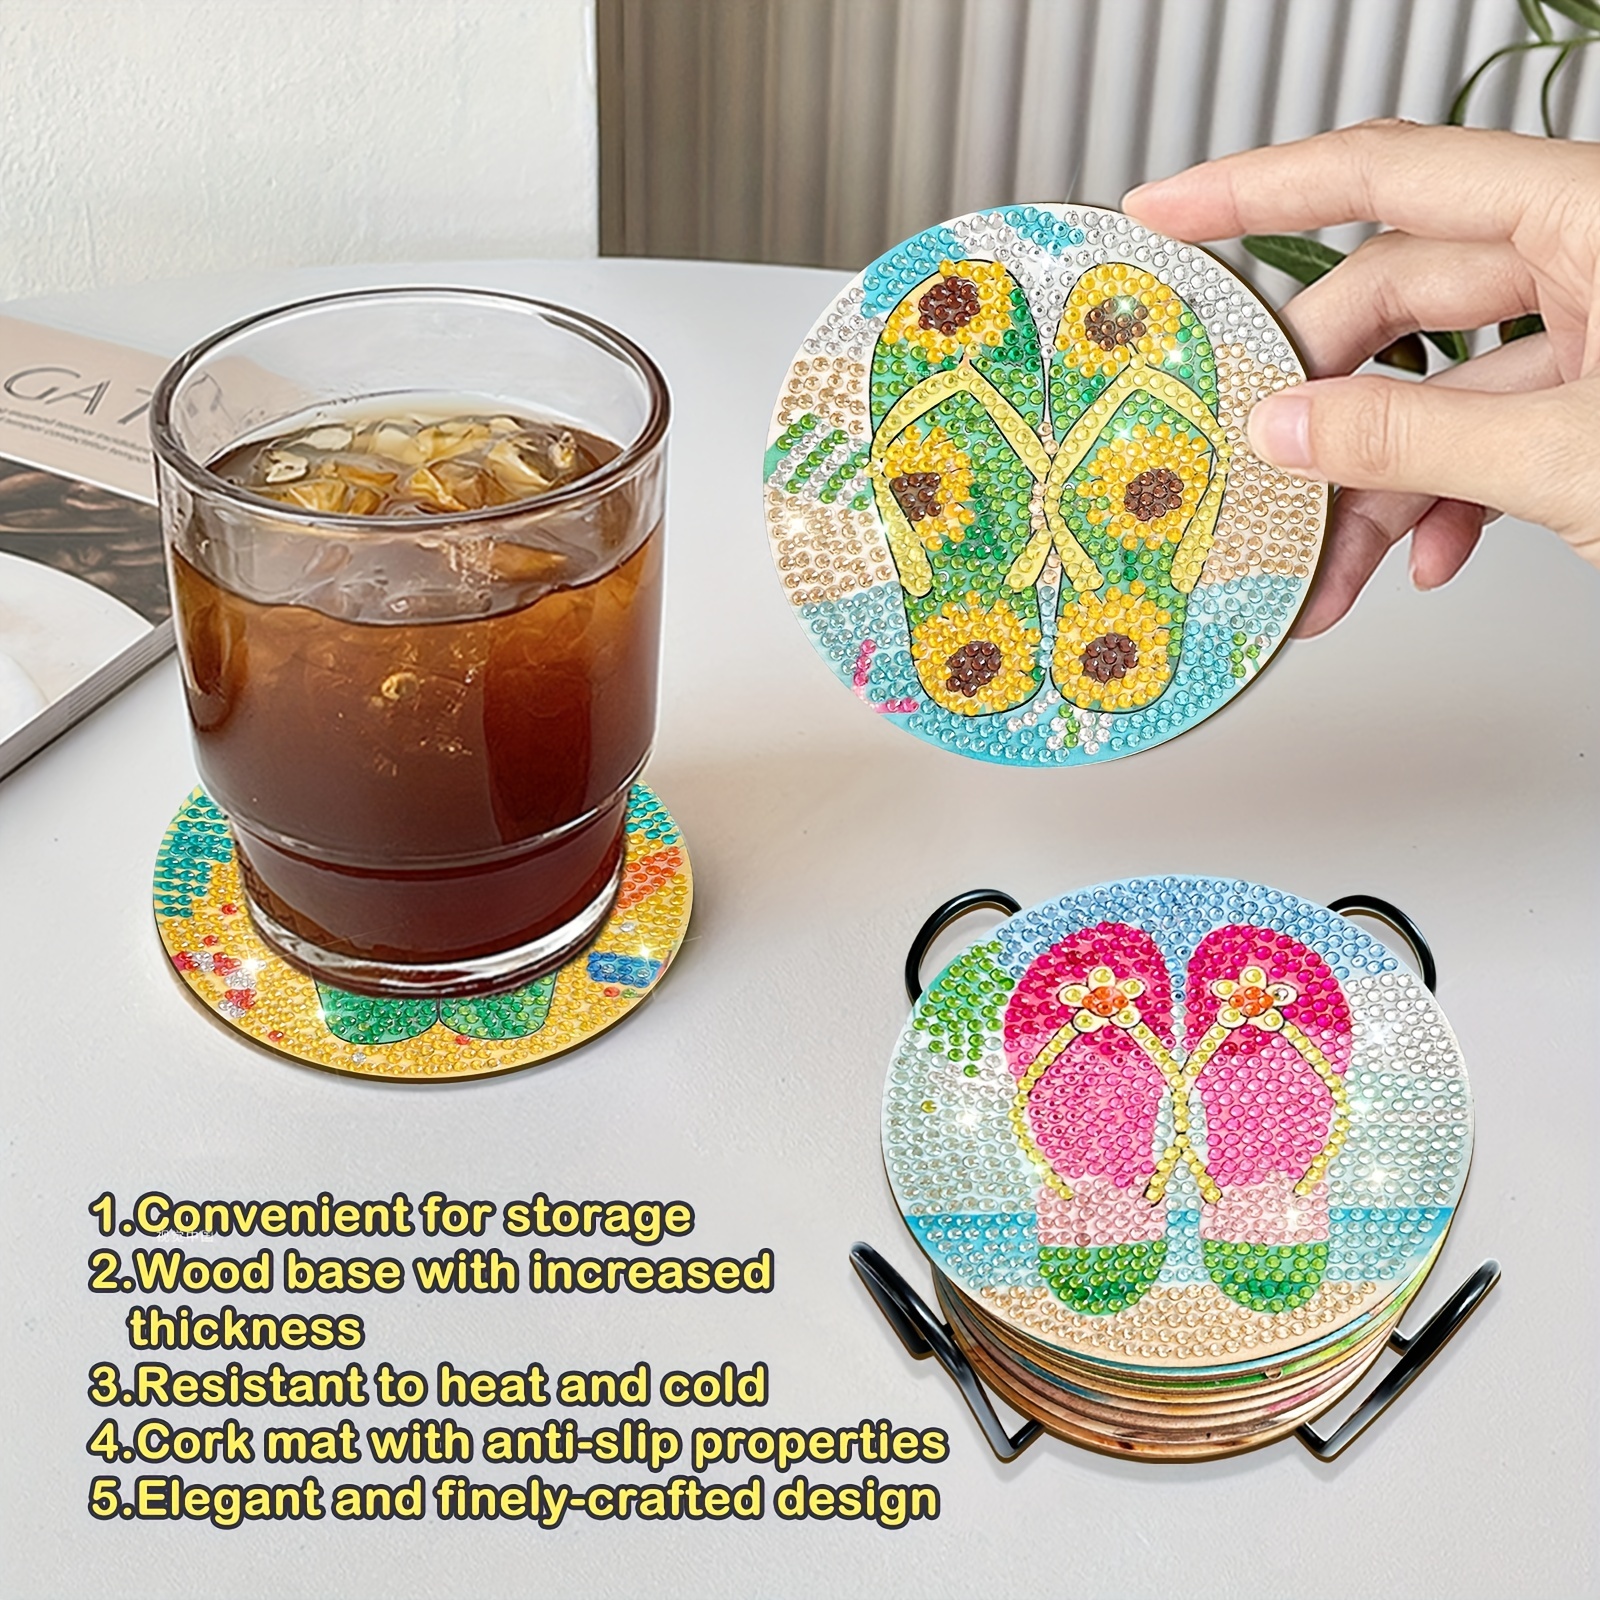 Handcrafted Diamond Dotz Coasters - Gnome Coffee Coasters - 8 - Non slip